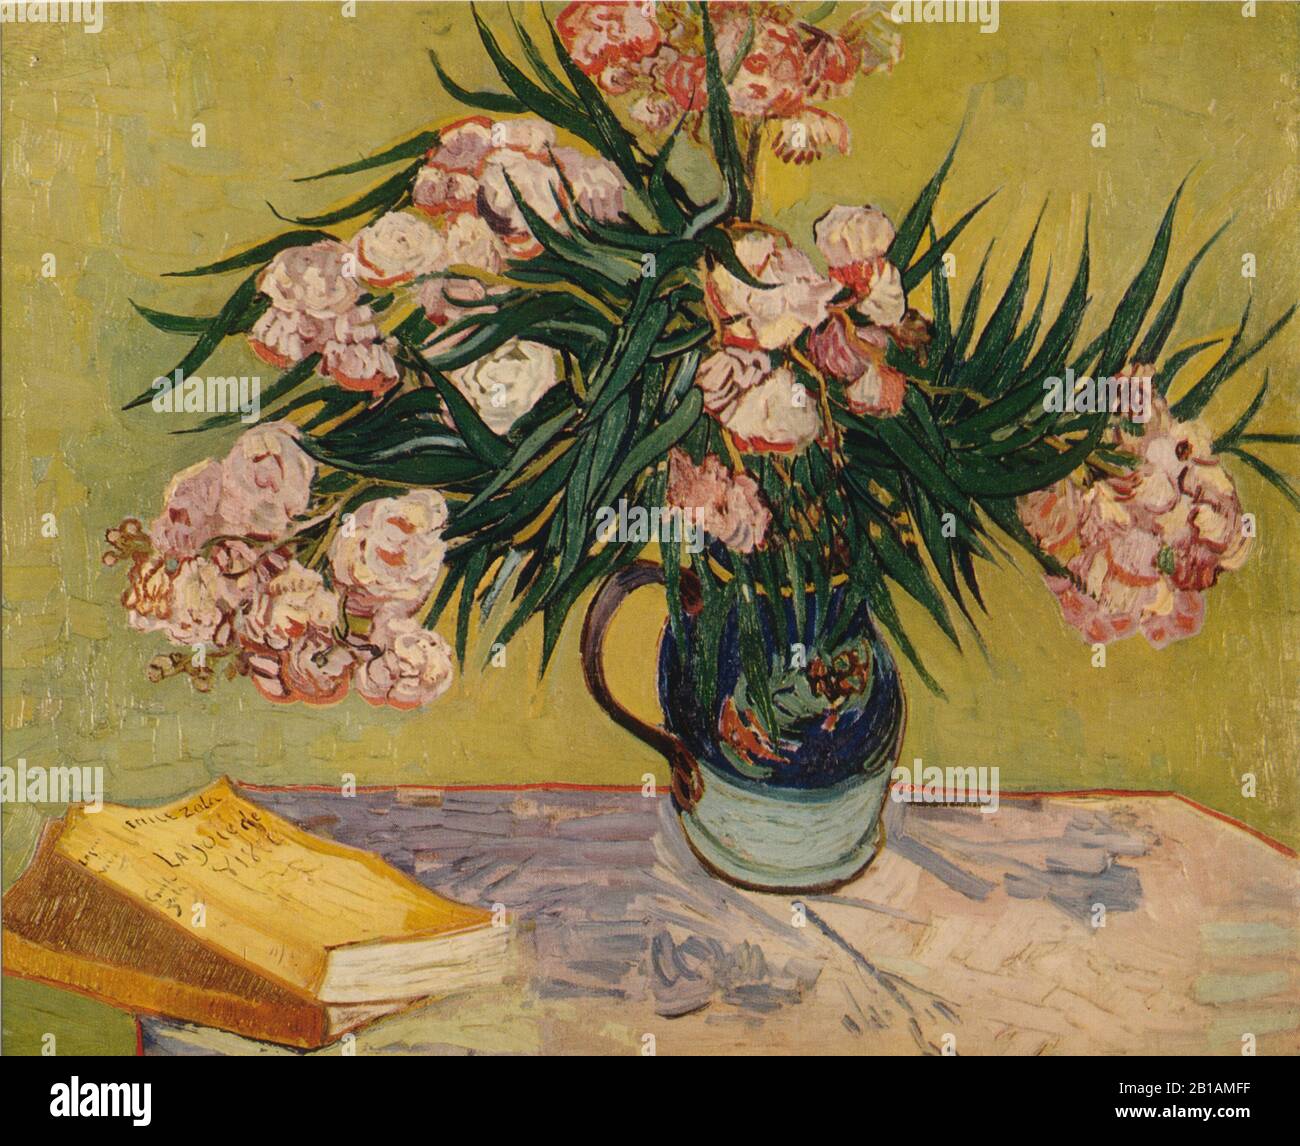 Oleandri 1888 dipinto di Vincent van Gogh - Immagine Ad Altissima risoluzione e qualità Foto Stock